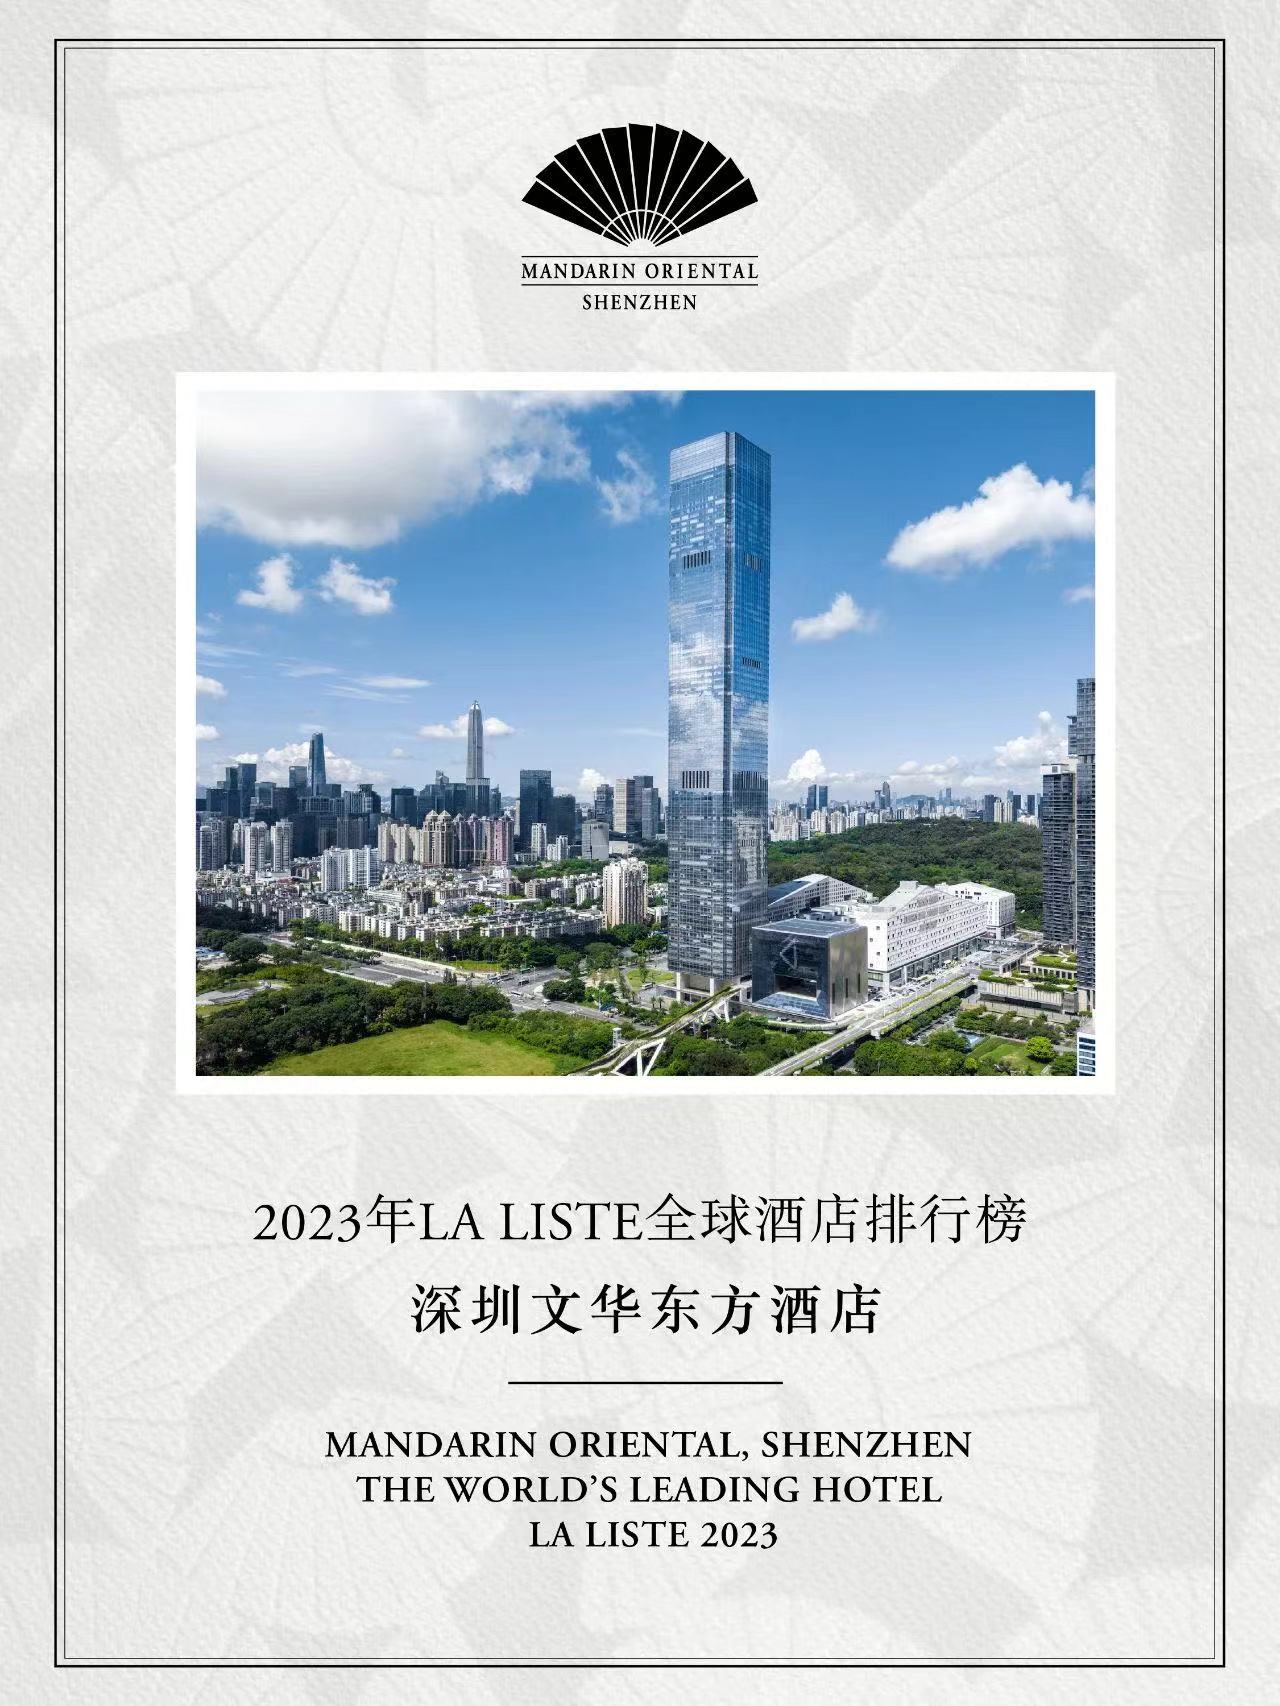 Mandarin Oriental, Shenzhen Received Recognition in La Liste 2023